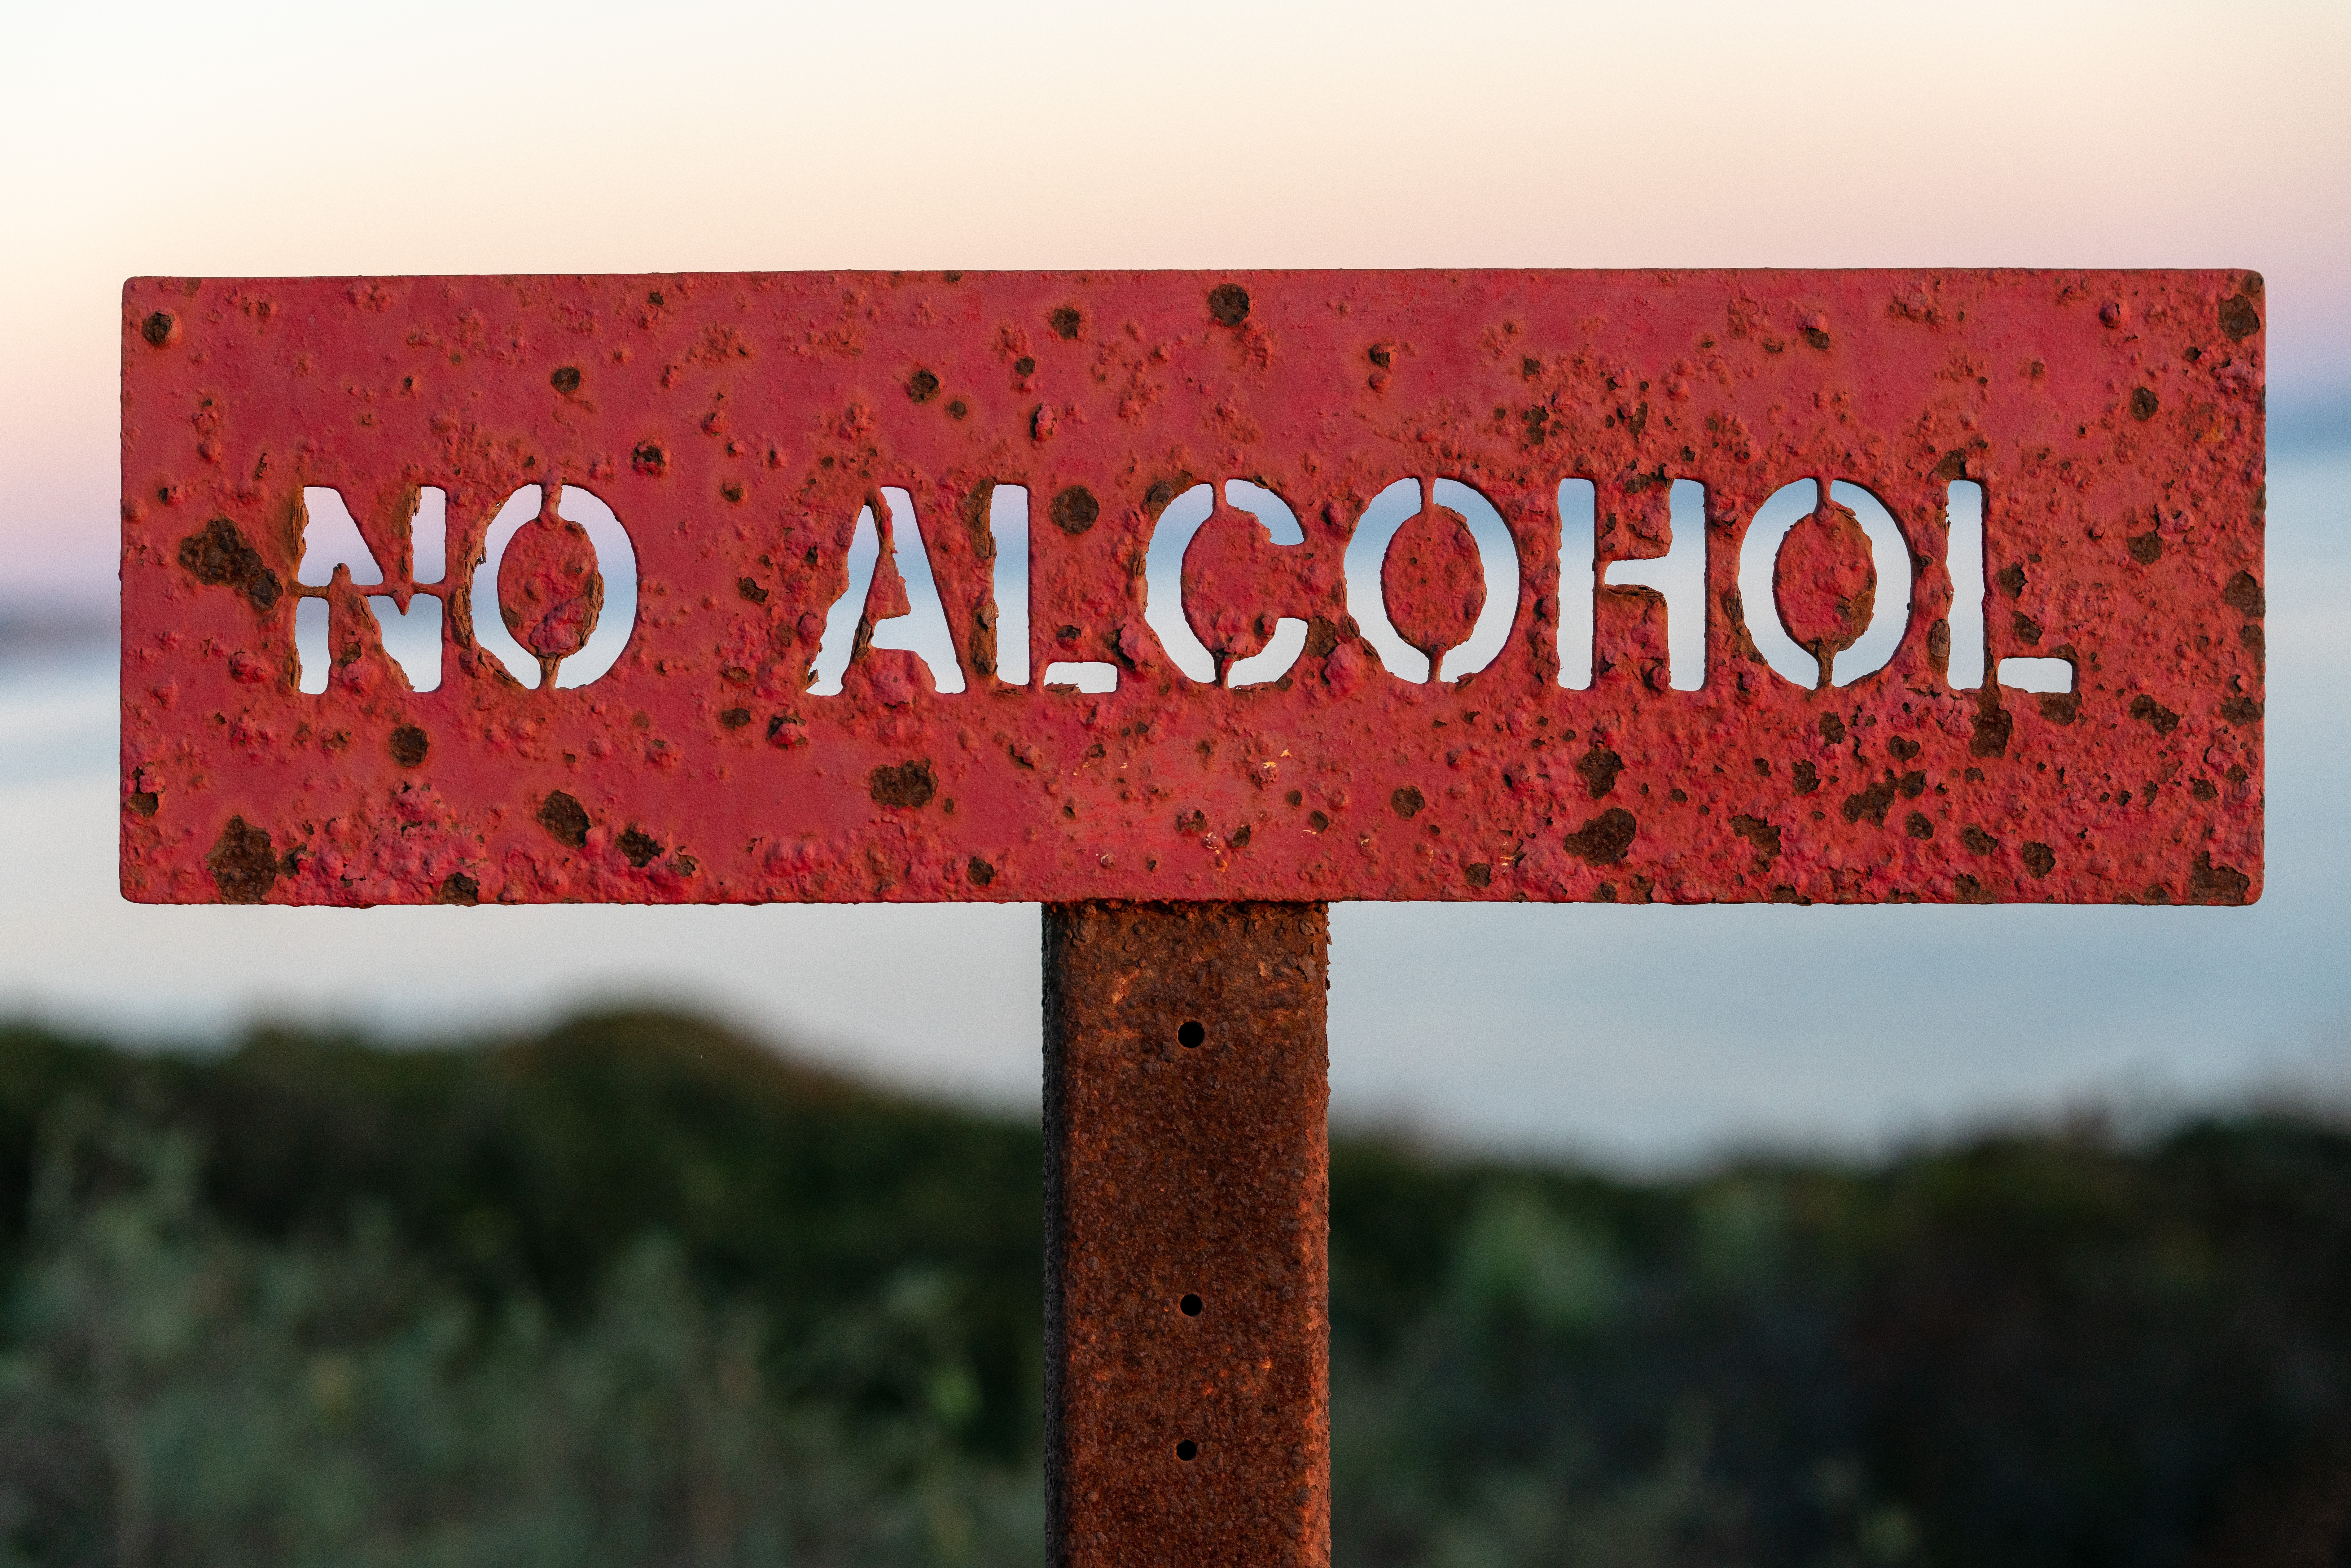 Korzyści z niepicia alkoholu, czyli dlaczego warto być trzeźwym